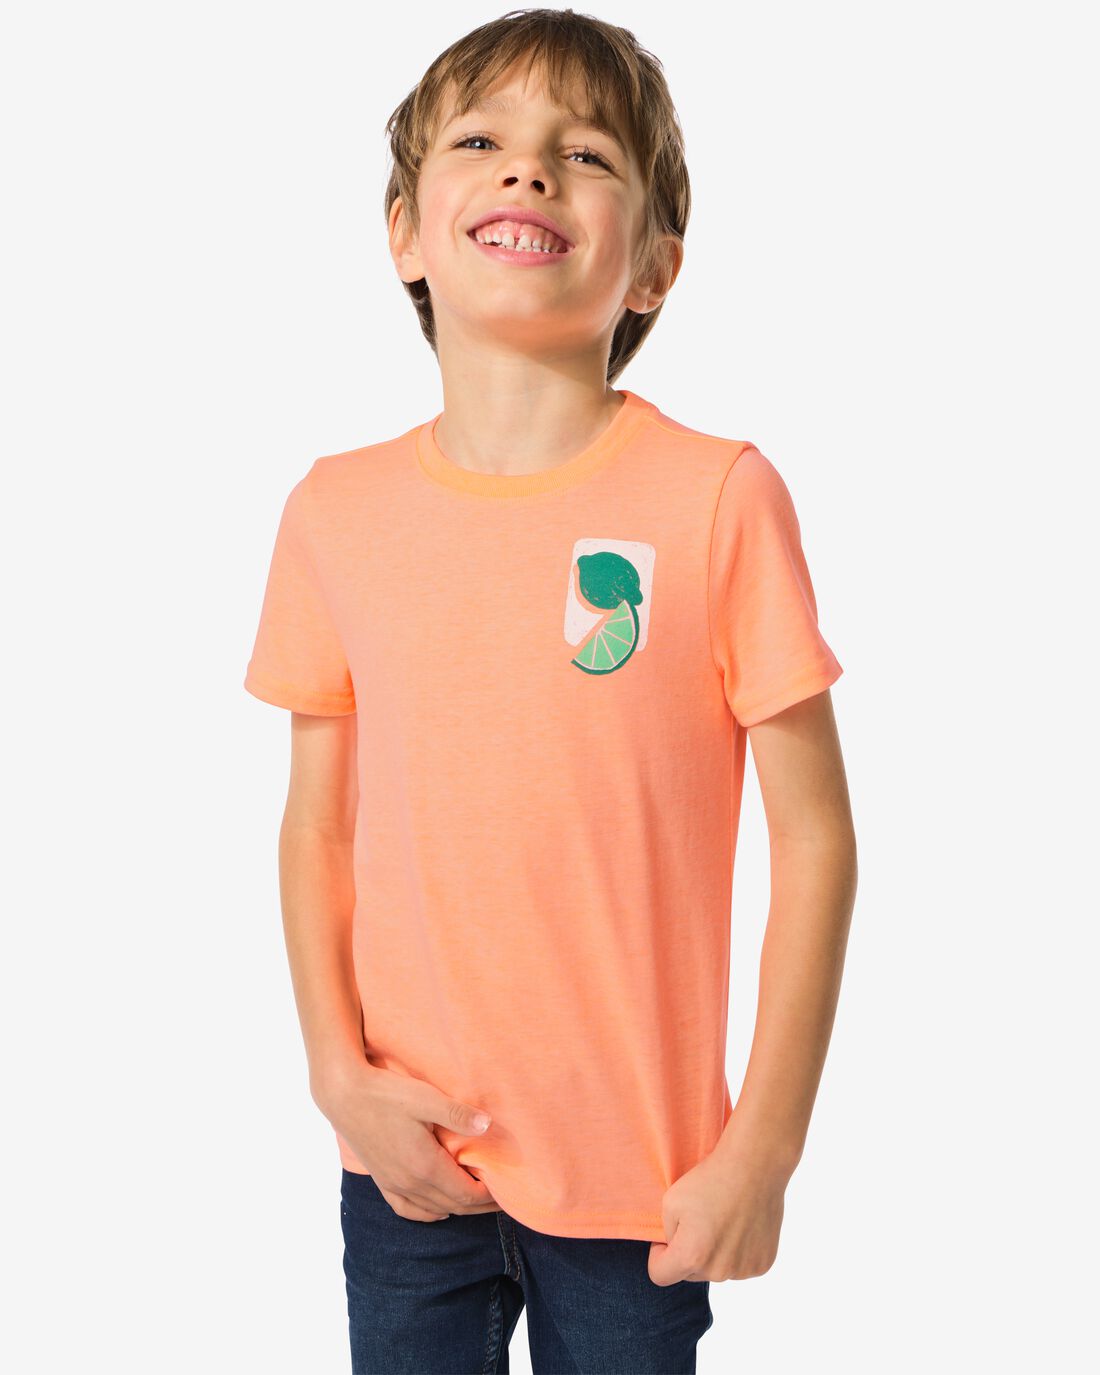 HEMA Kinder T-shirt Citrus Oranje (oranje)